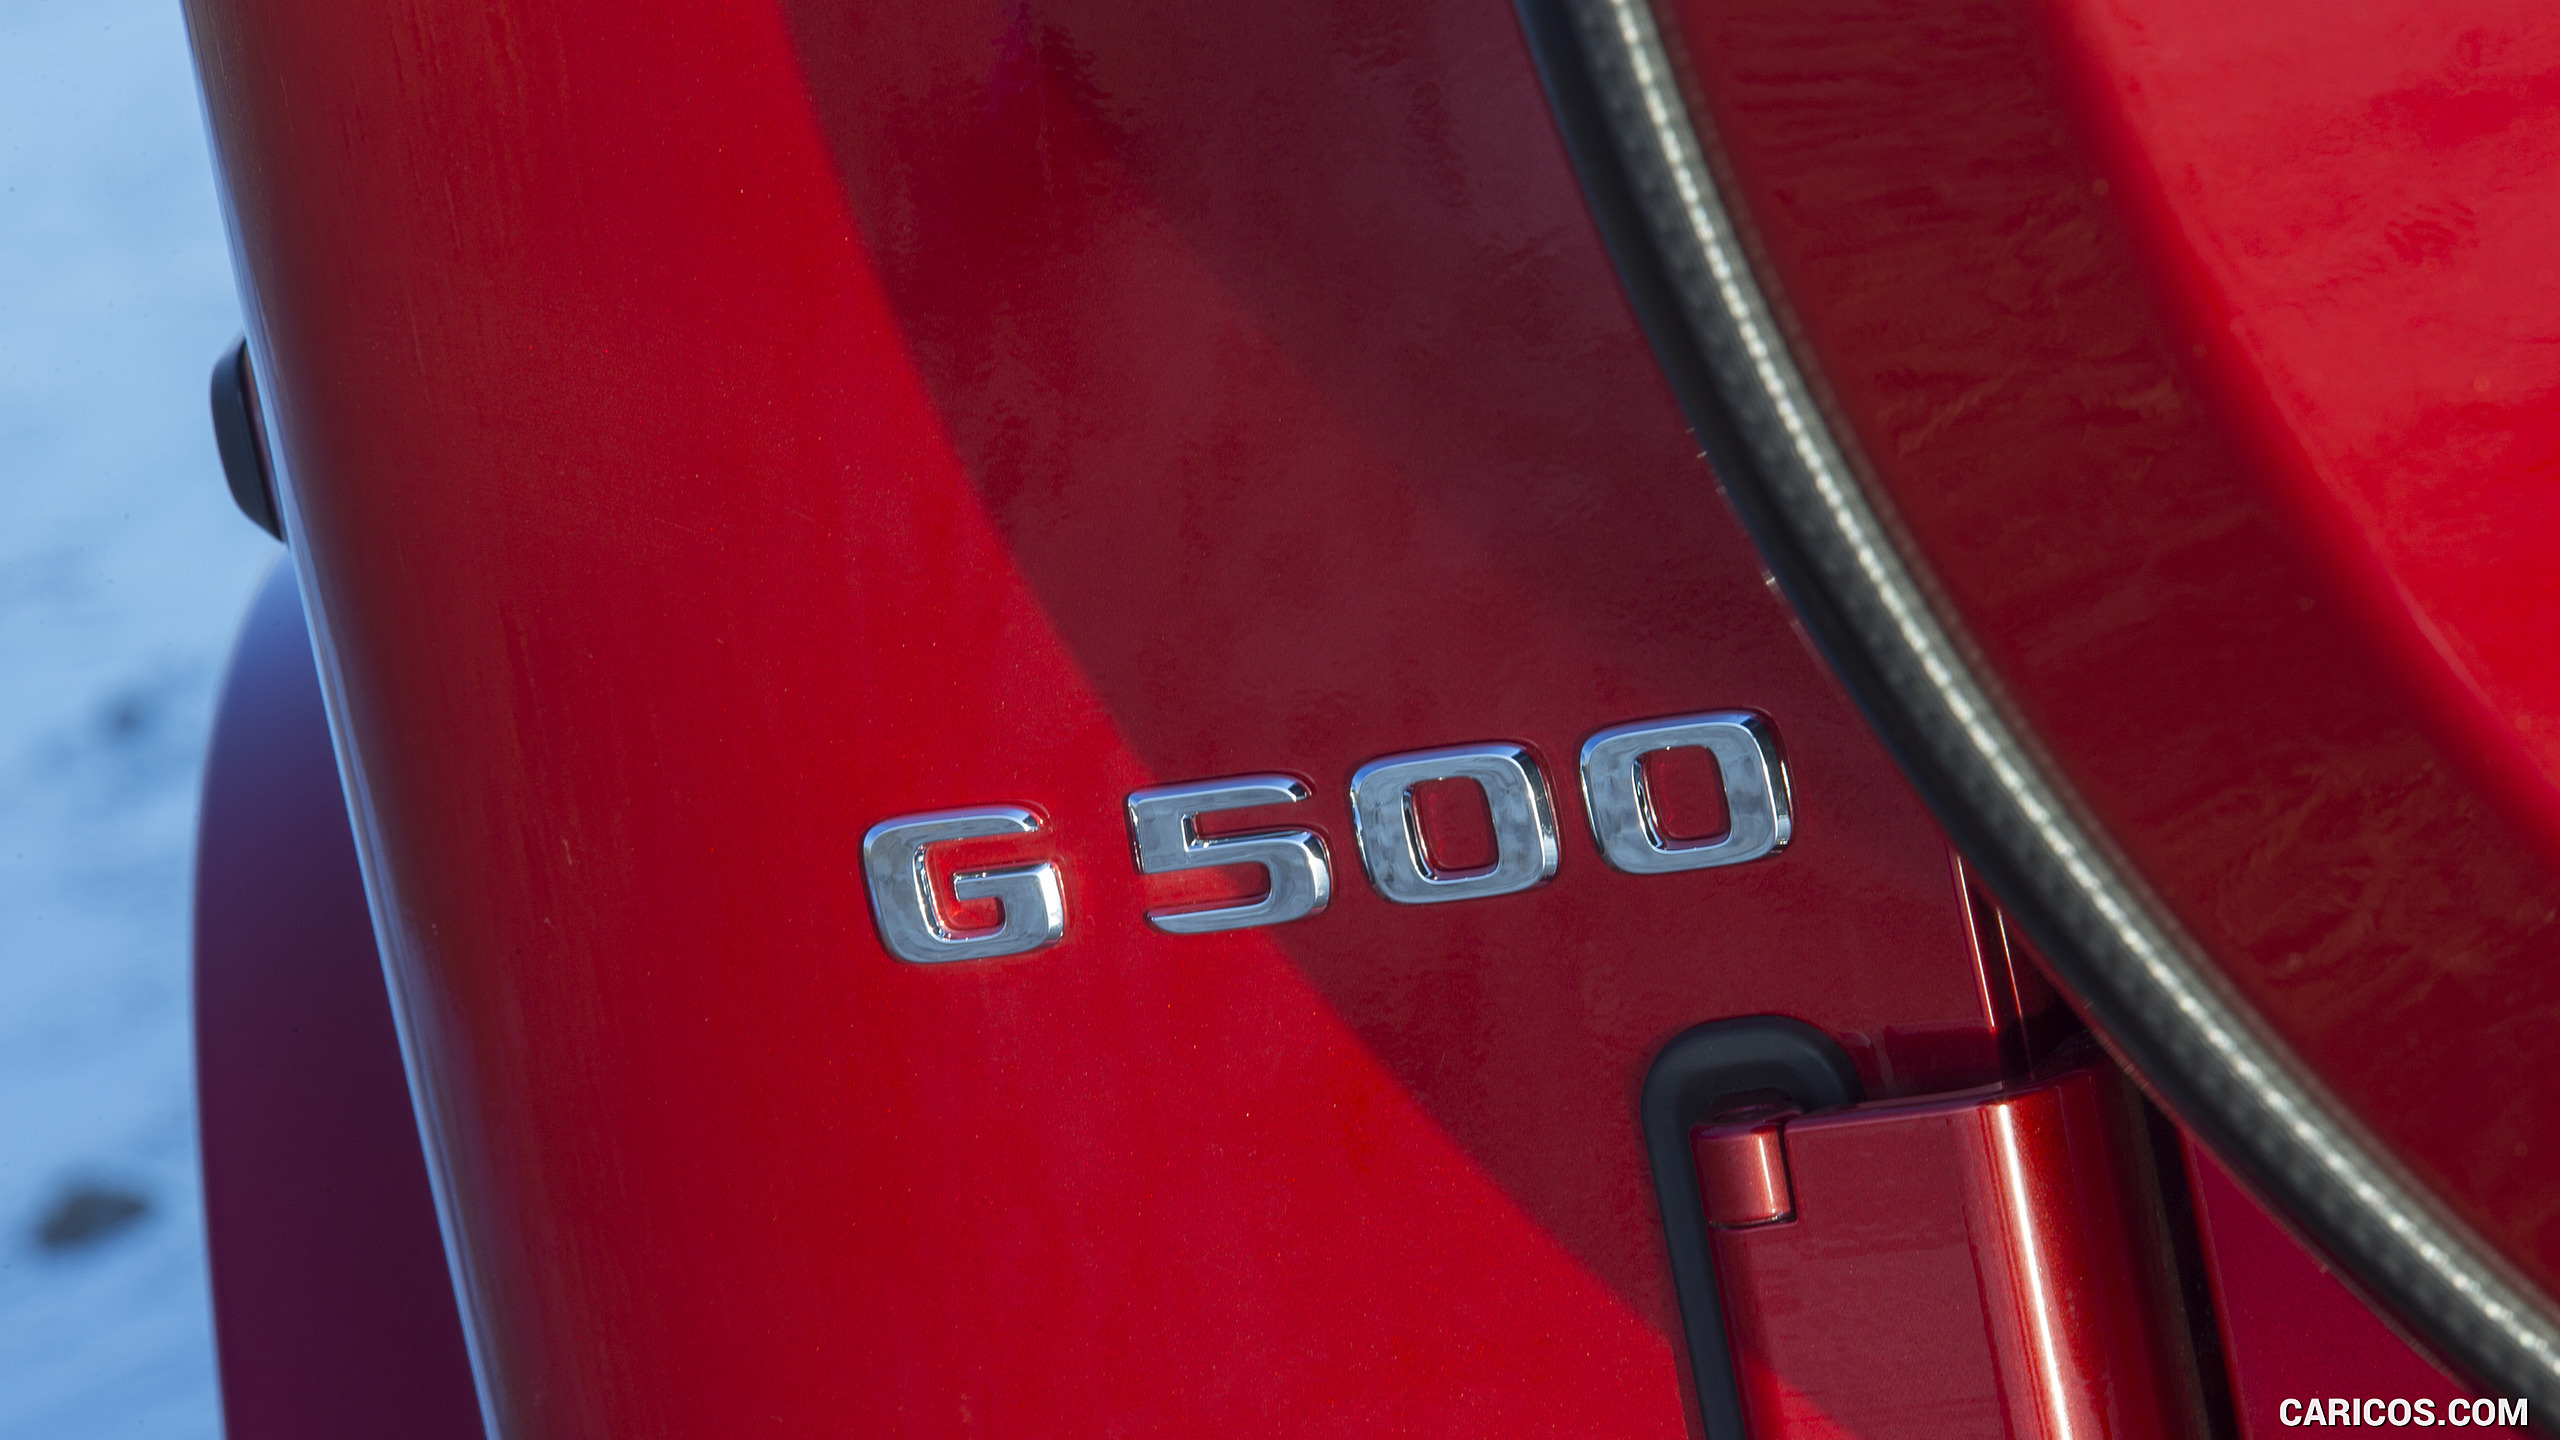 2019 Mercedes-Benz G-Class G550 - Badge, #115 of 397